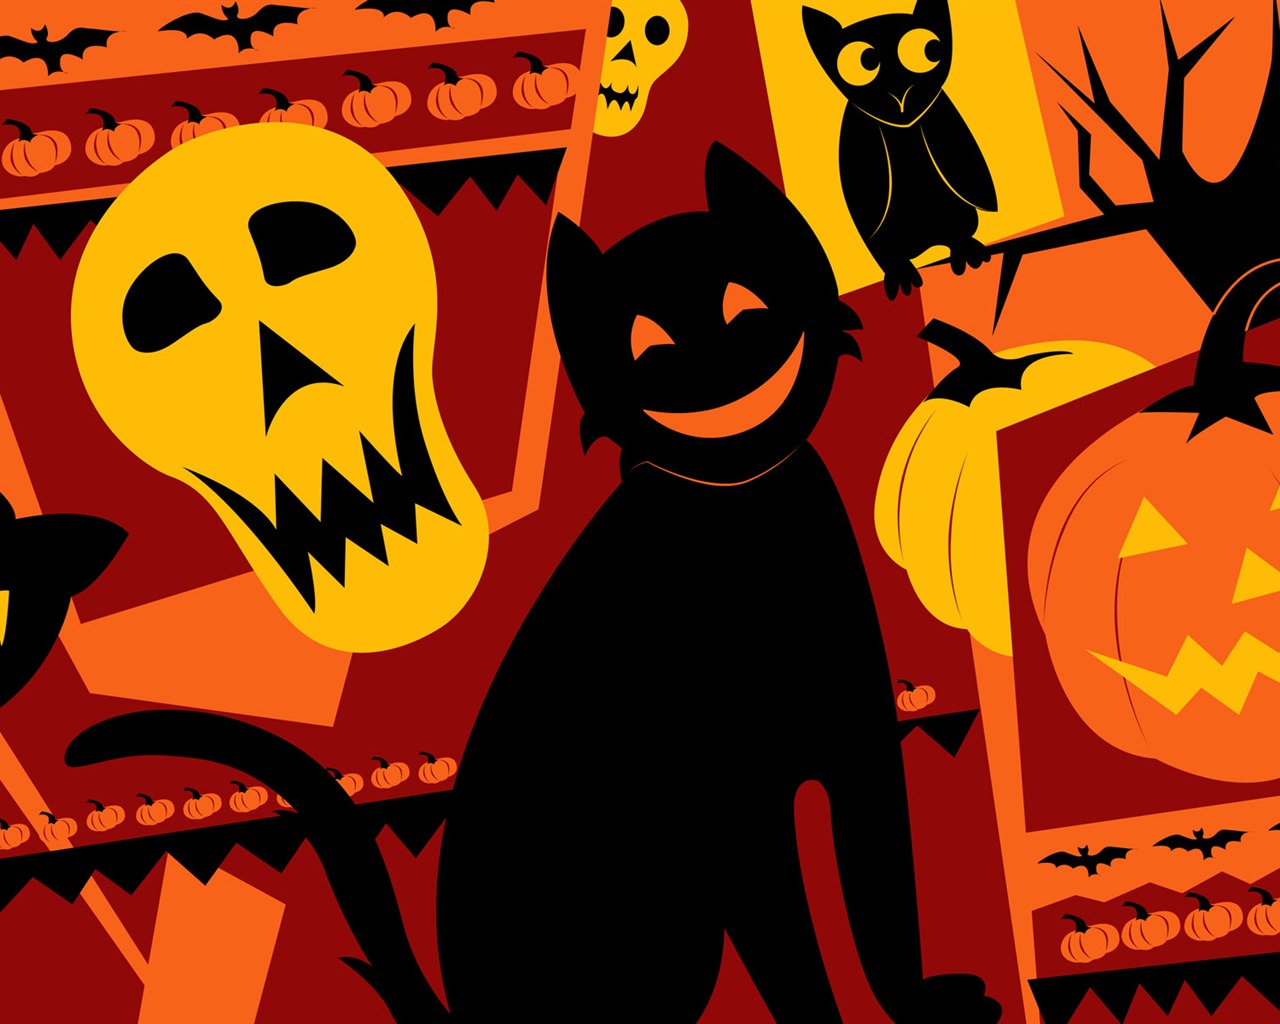 Fondos de Halloween temáticos (5) #14 - 1280x1024